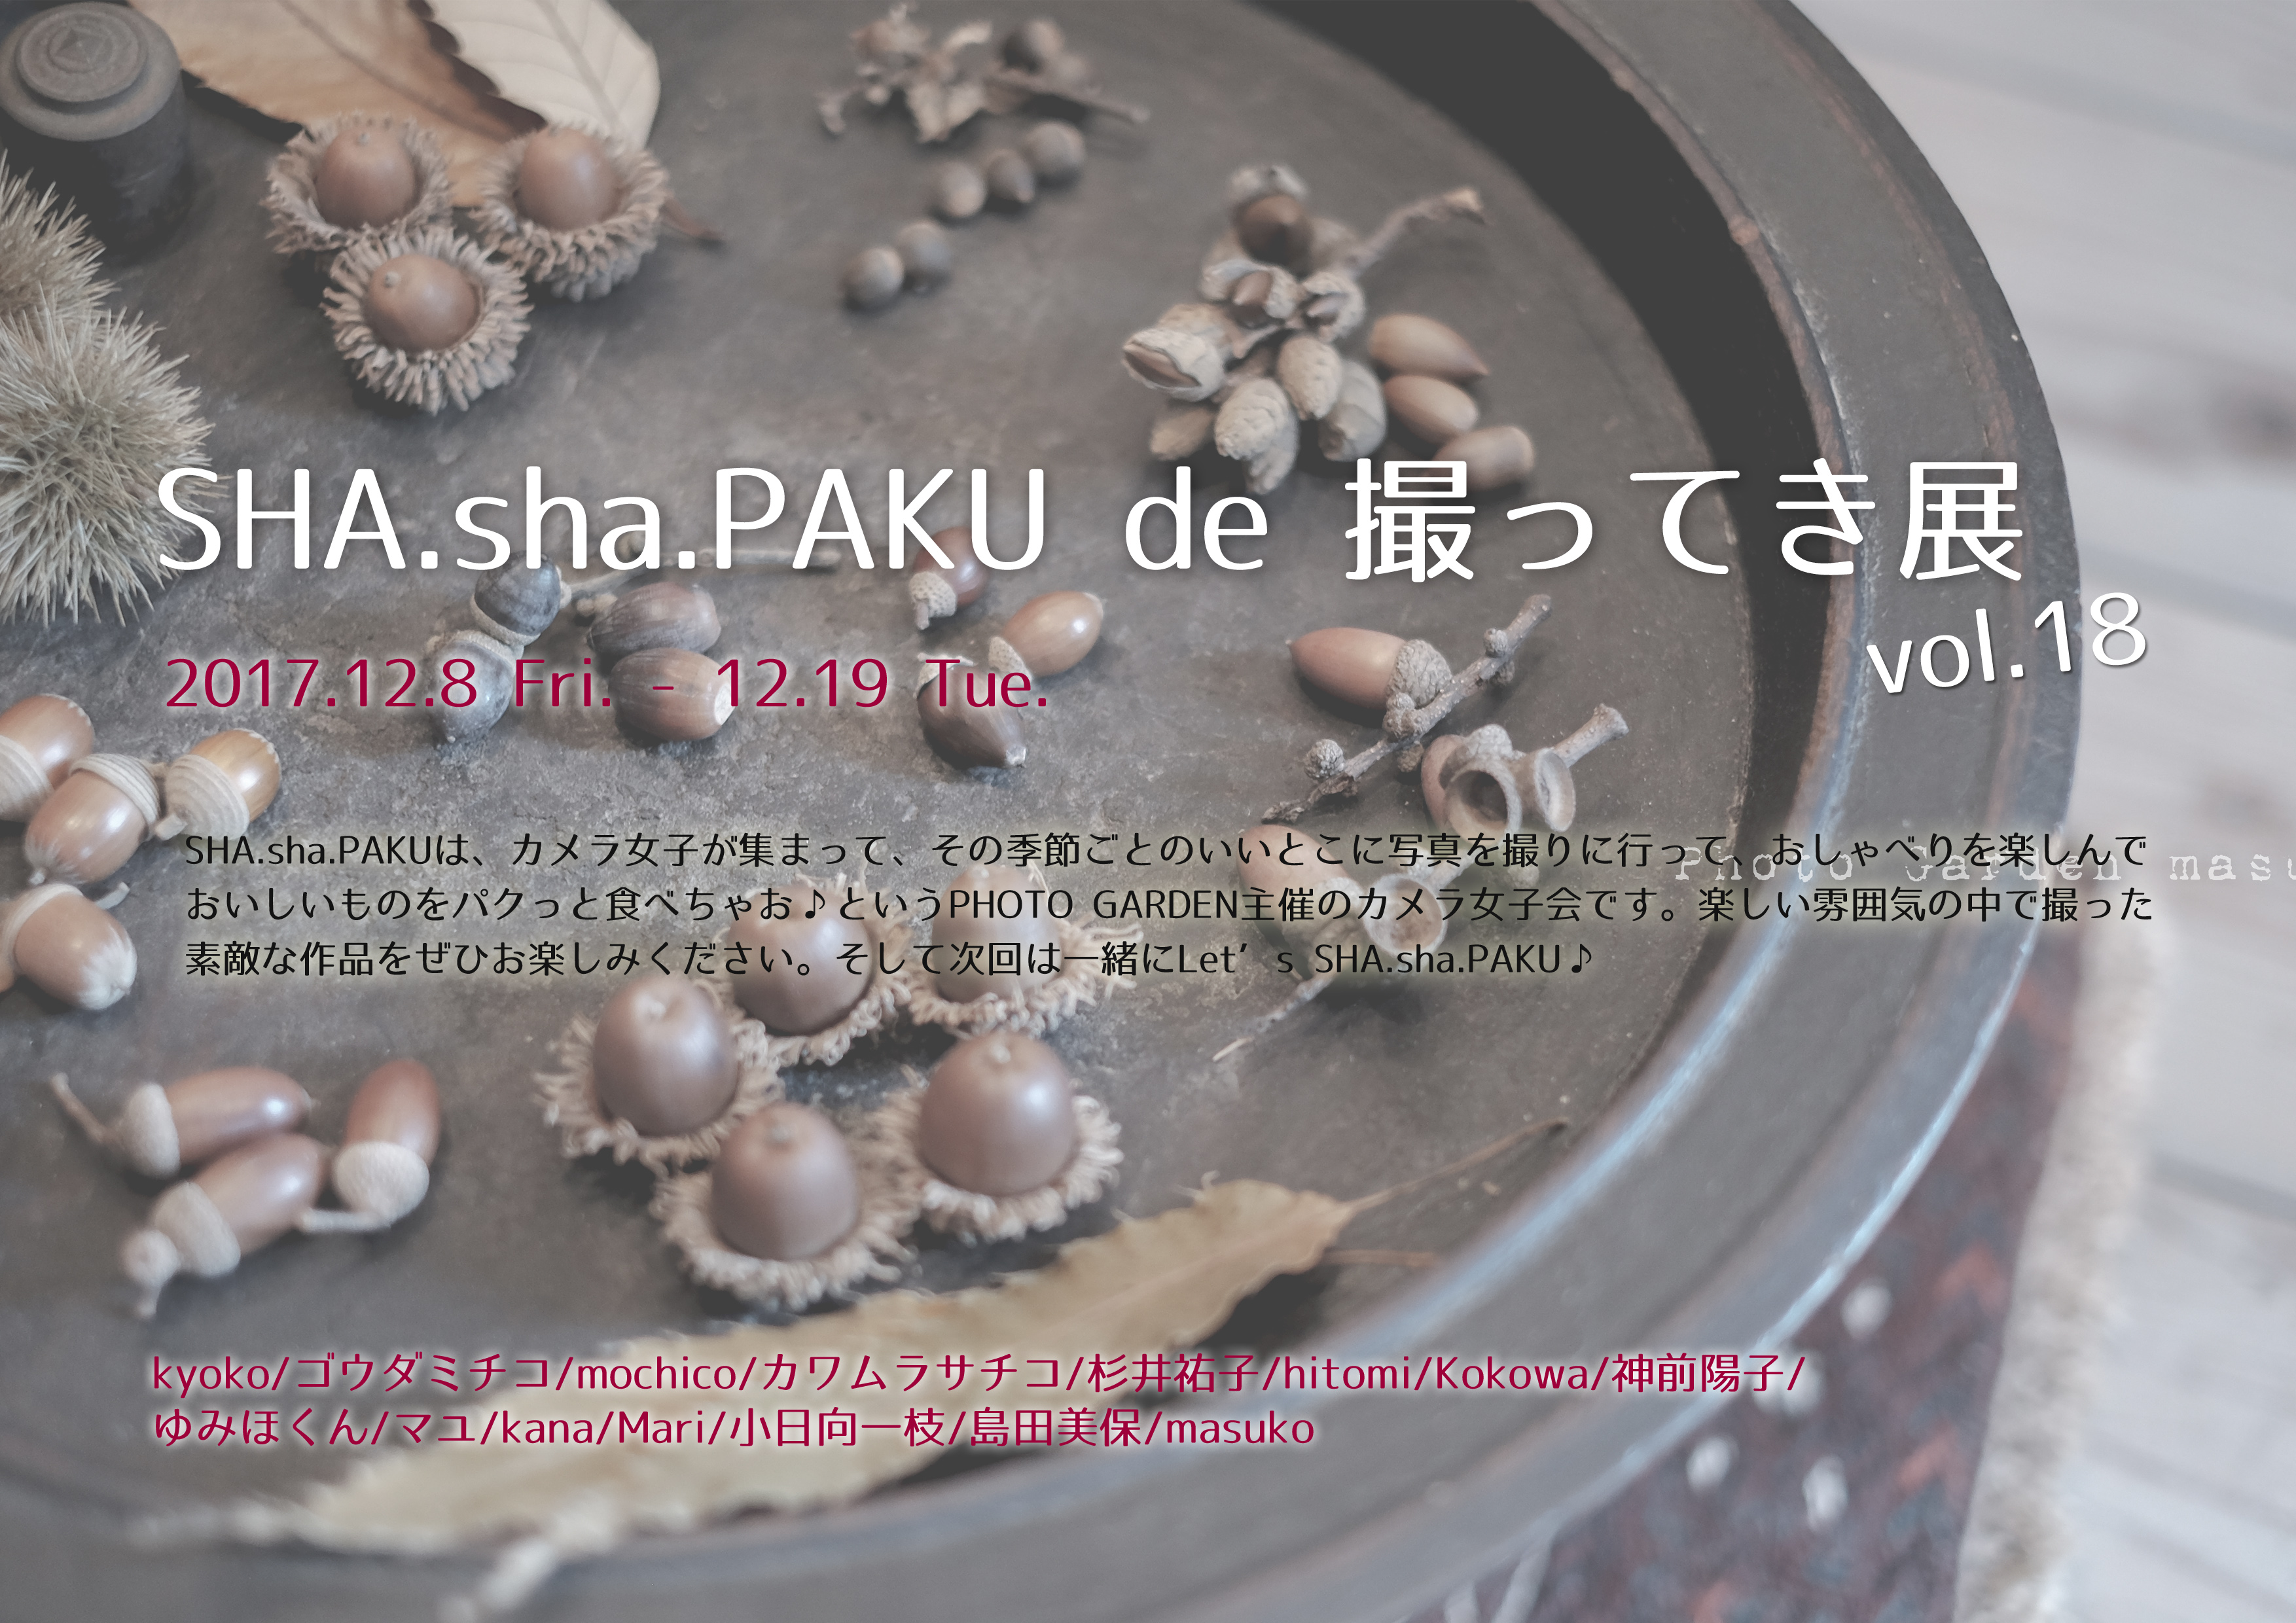 「SHA.sha.PAKU de 撮ってき展 vol.18」最終日